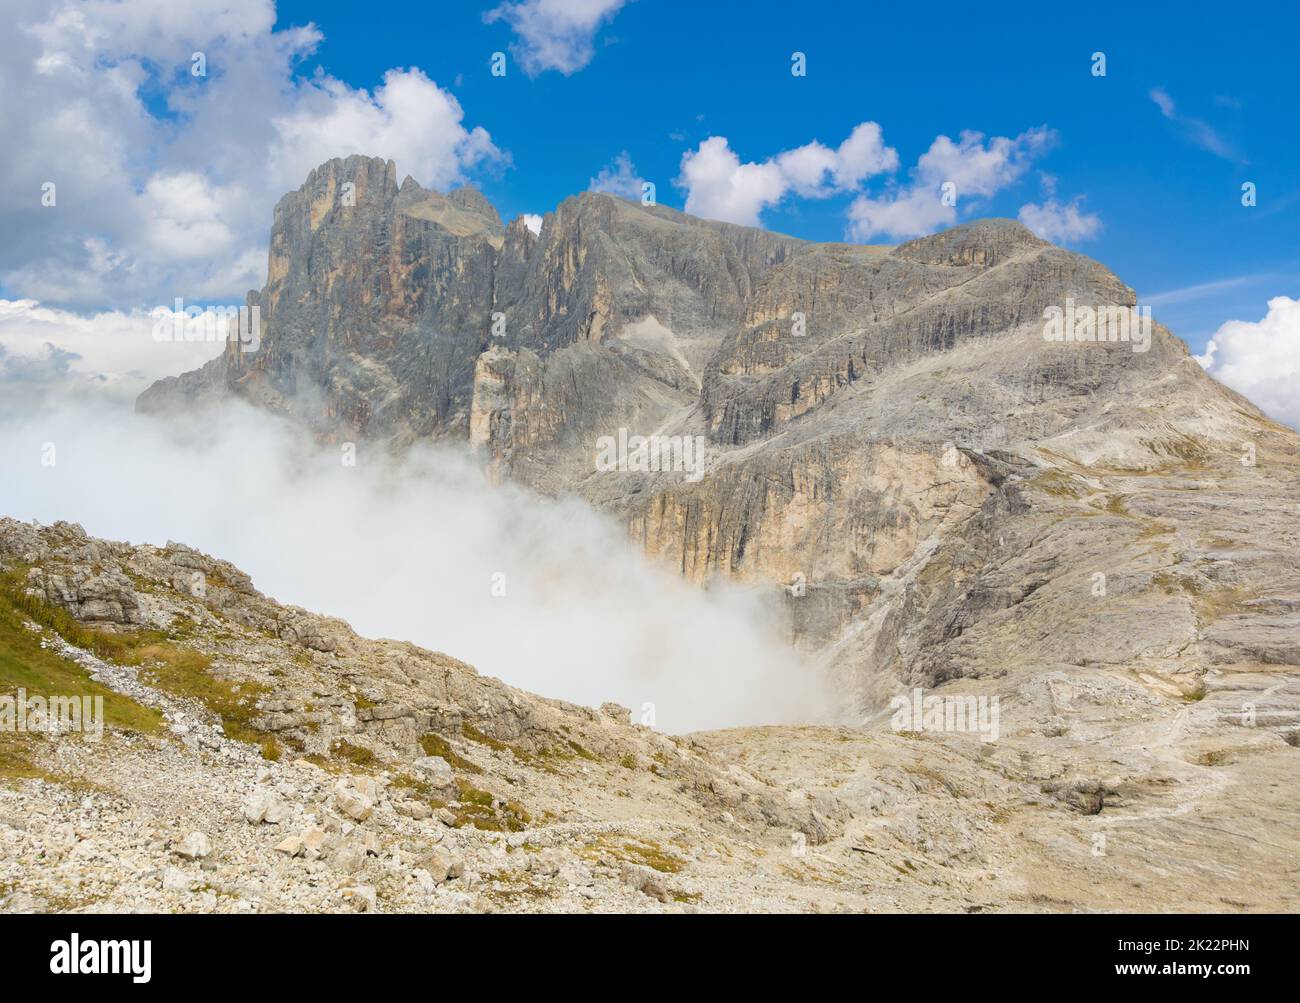 Dolomiti (Italia) - una veduta panoramica della catena montuosa delle Dolomiti, patrimonio mondiale dell'UNESCO, in Veneto e Trentino Alto Adige. Qui gruppo pale di San Martino Foto Stock